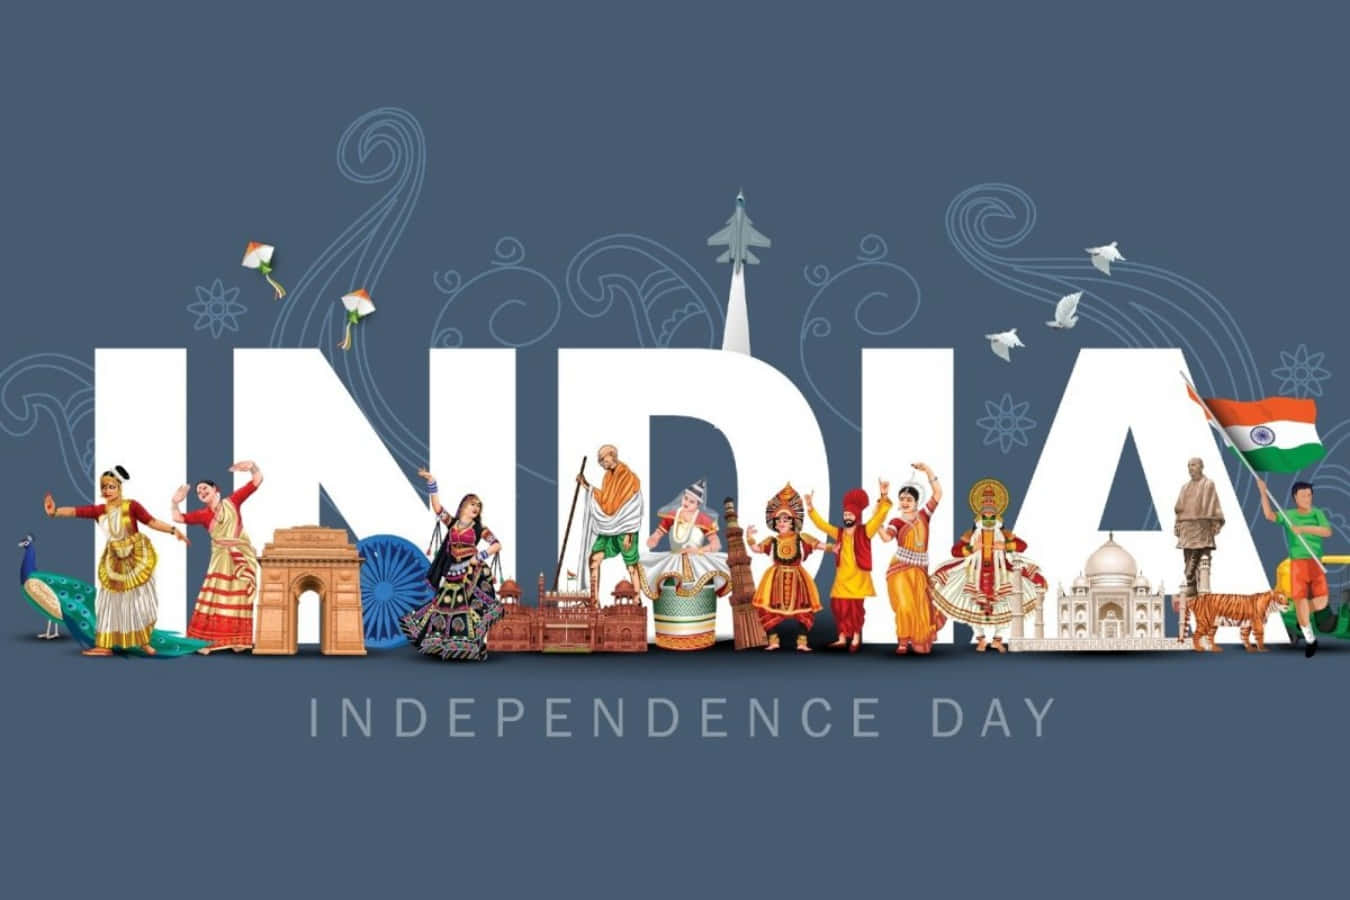 Imagende Personas Y Edificios Con Caricaturas Del Día De La Independencia De India